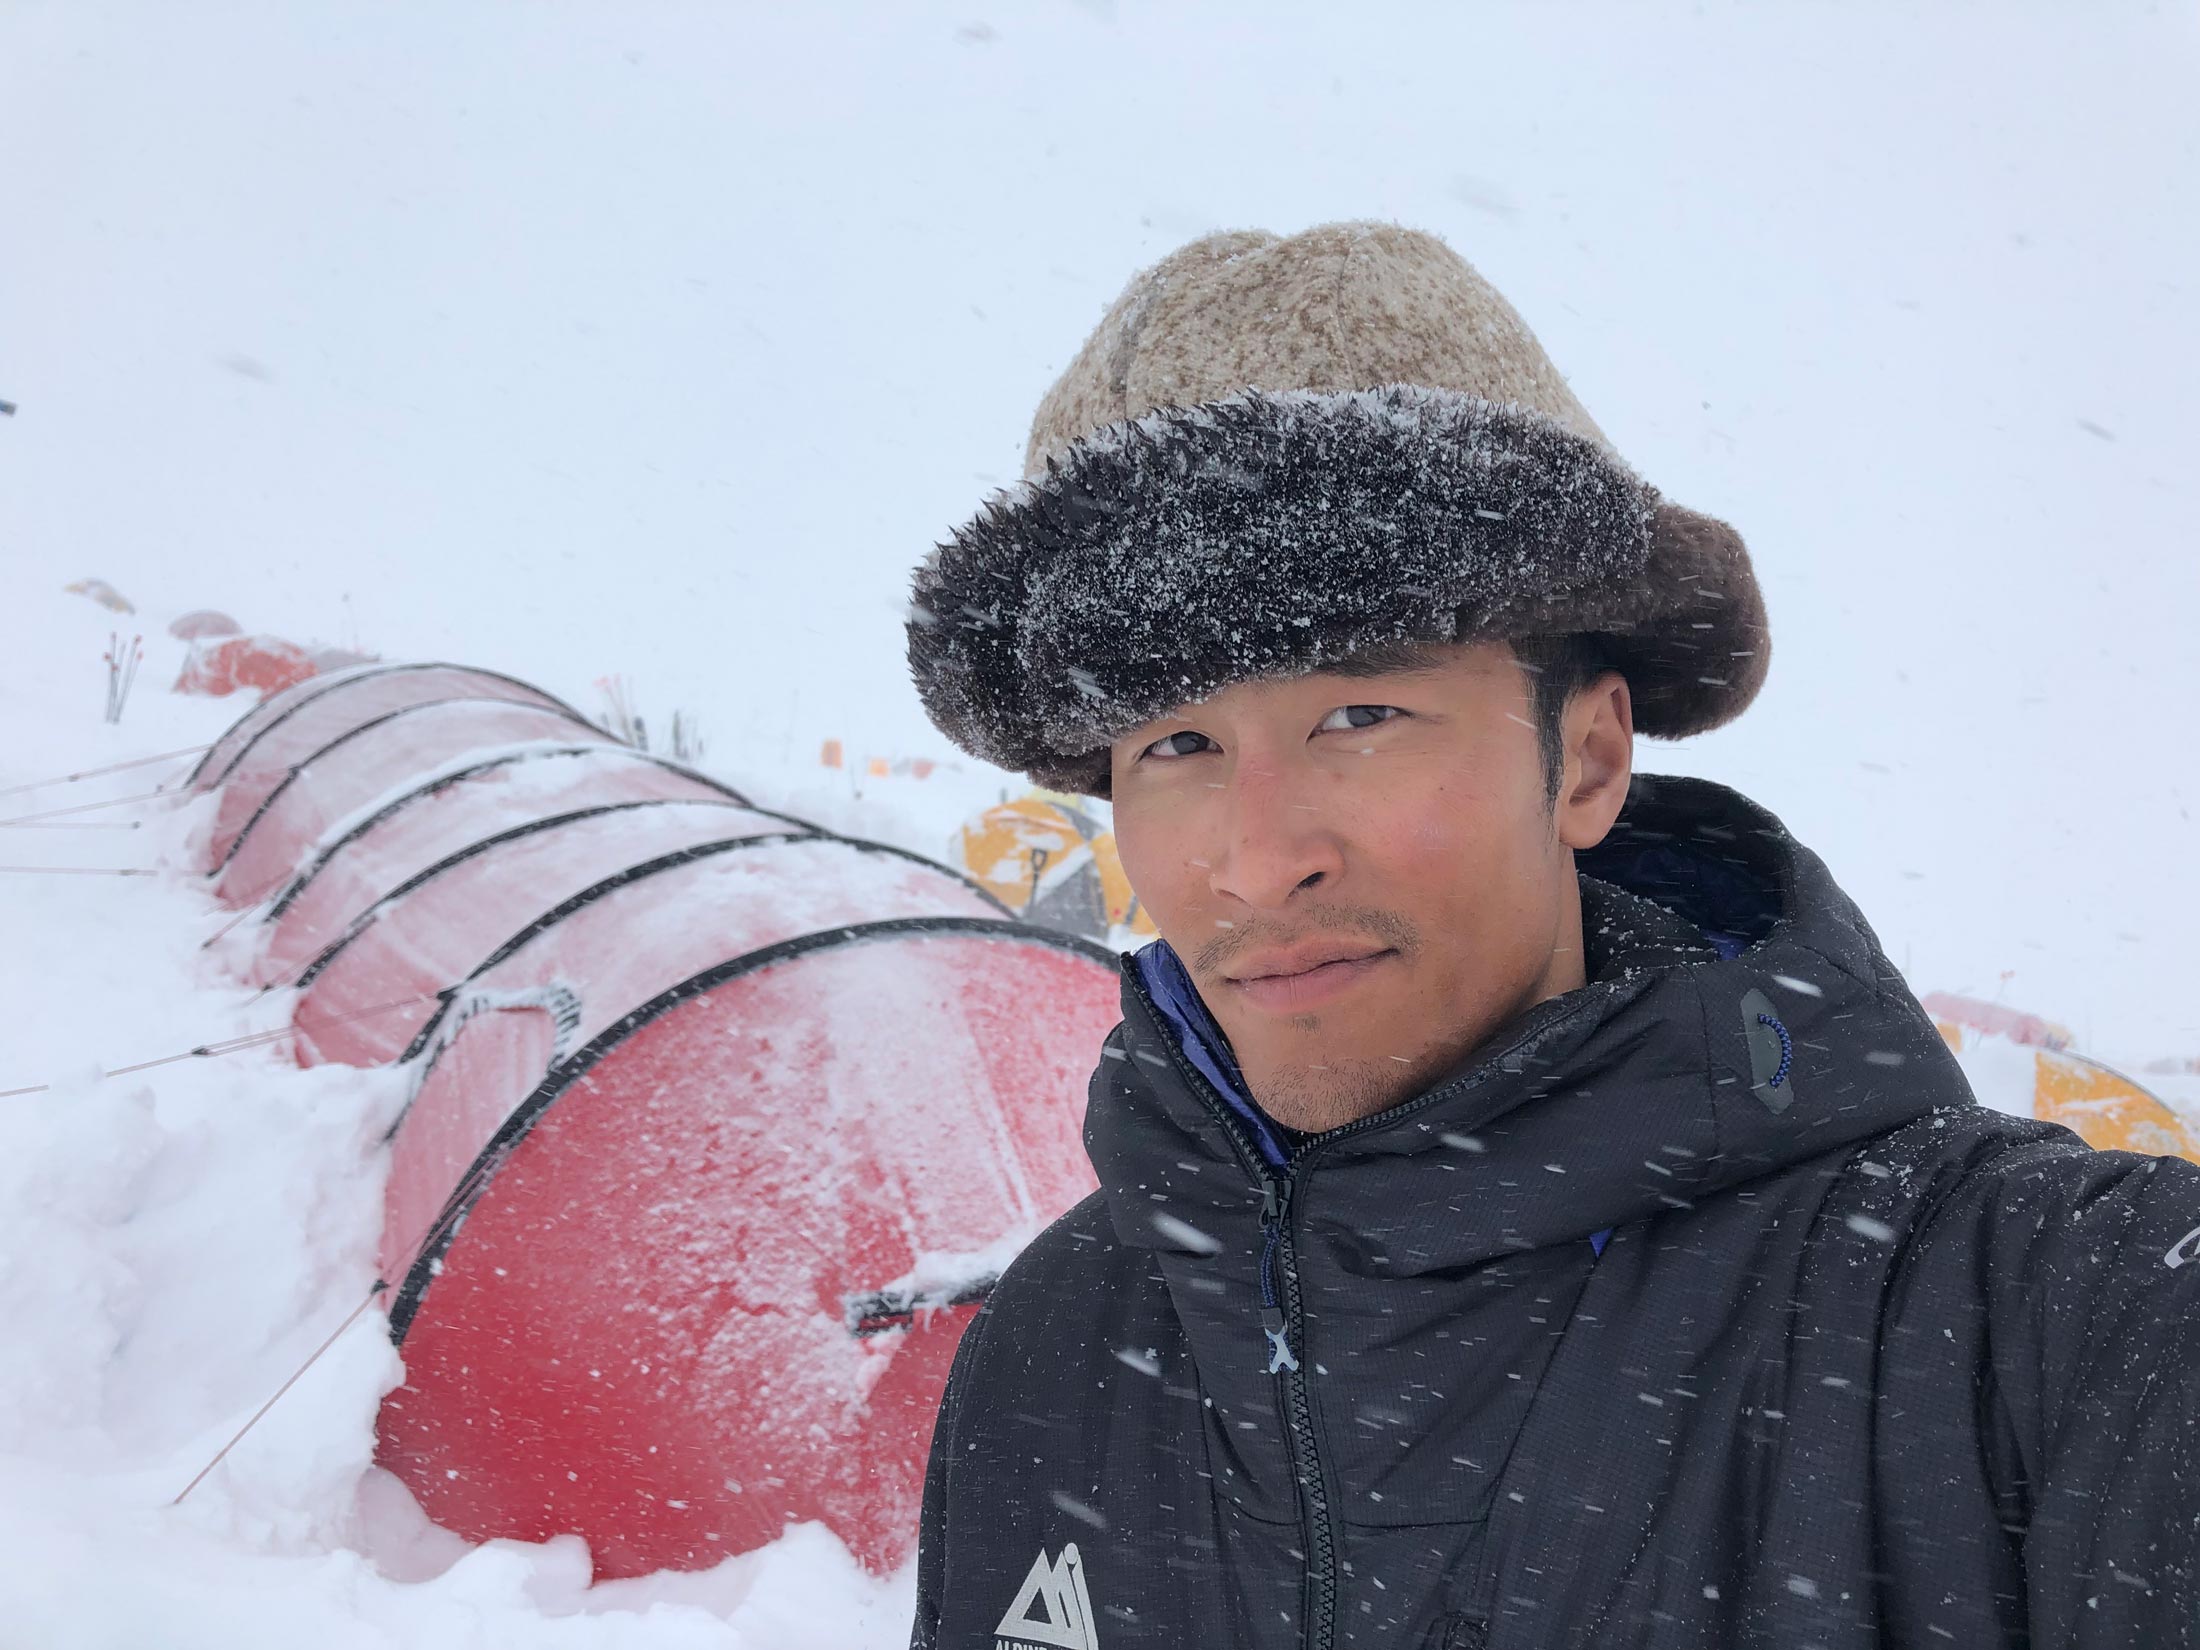 Don Nguyen at the 14,000 foot camp on Denali